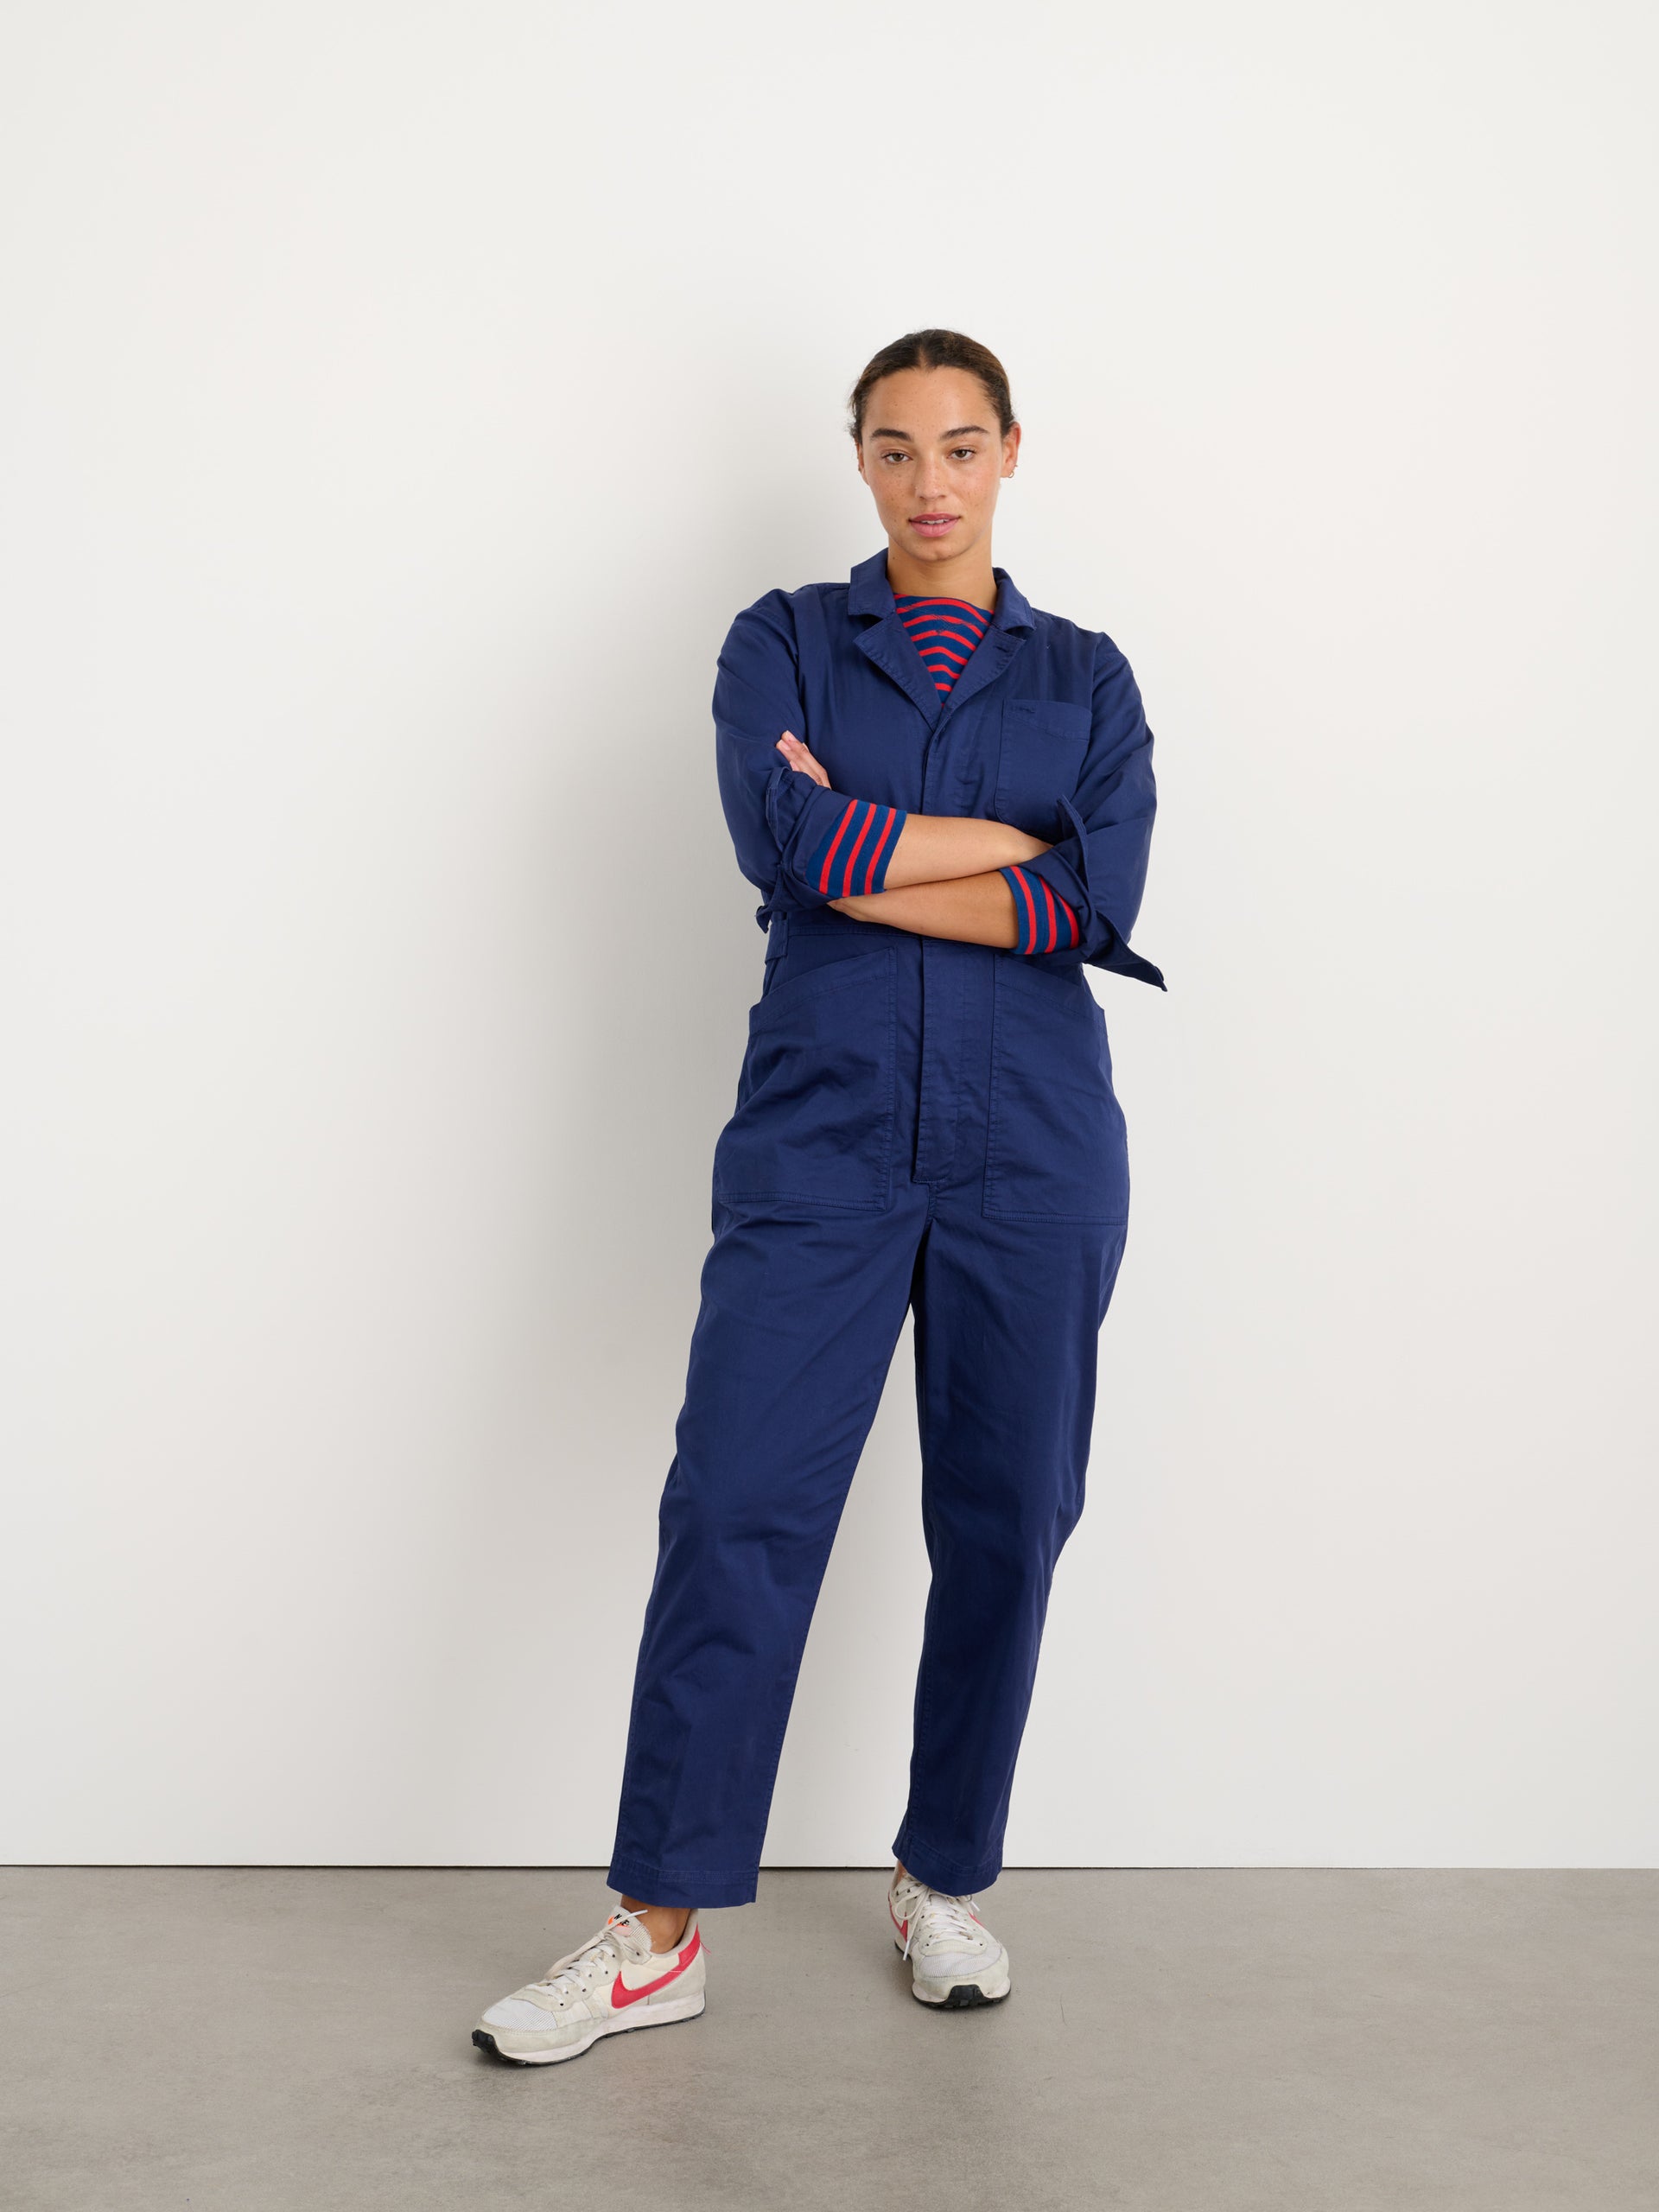 Standard Jumpsuit in Cotton Twill – Alex Mill